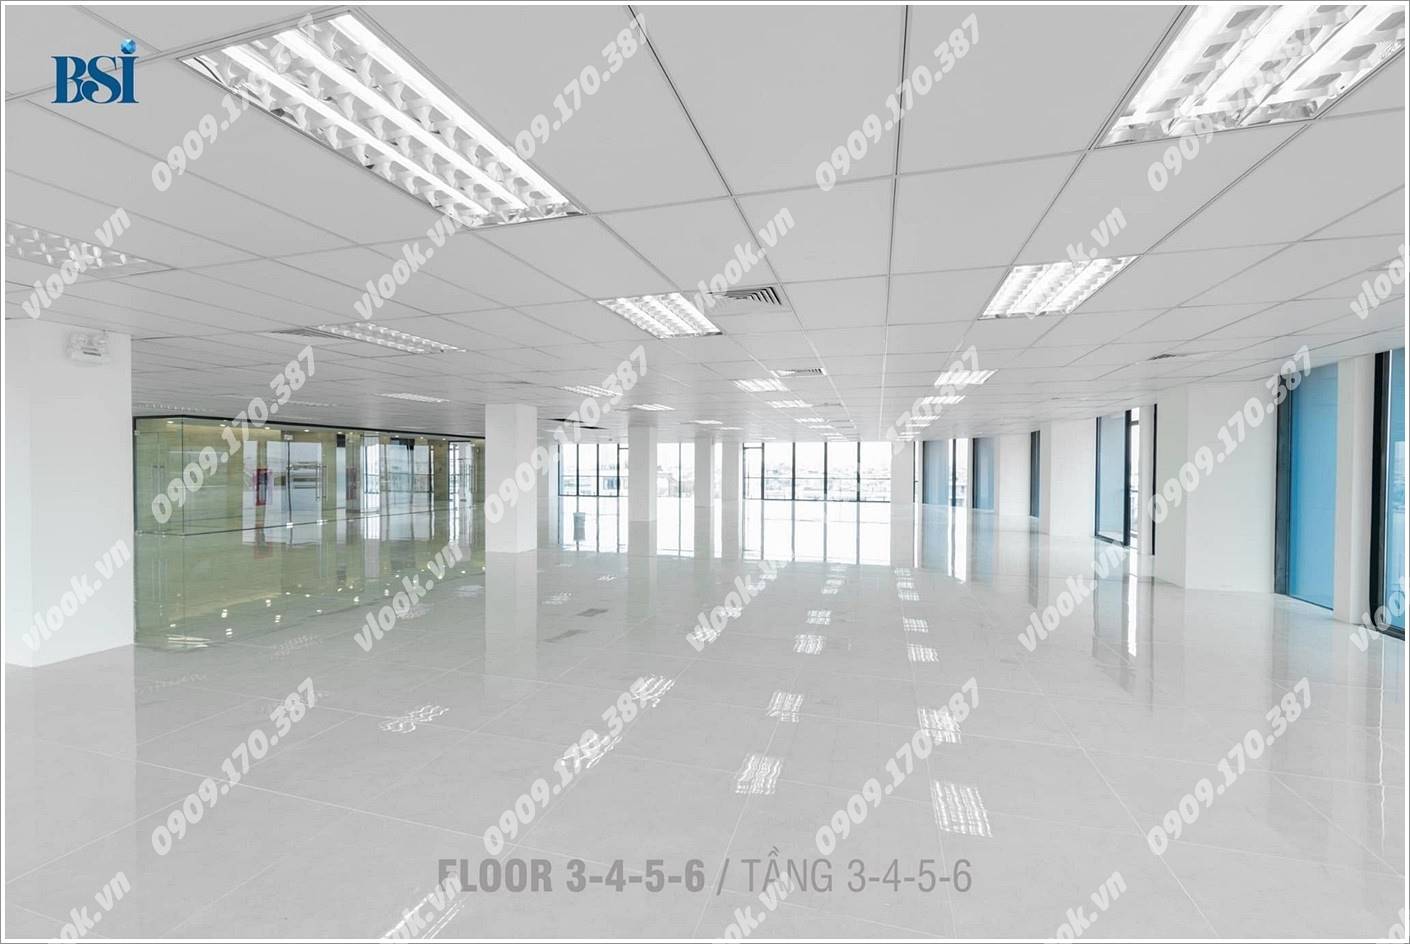 Sàn trống văn phòng cho thuê tại BSI Tower, Nguyễn Thị Nhung, Quận Thủ Đức, TP.HCM